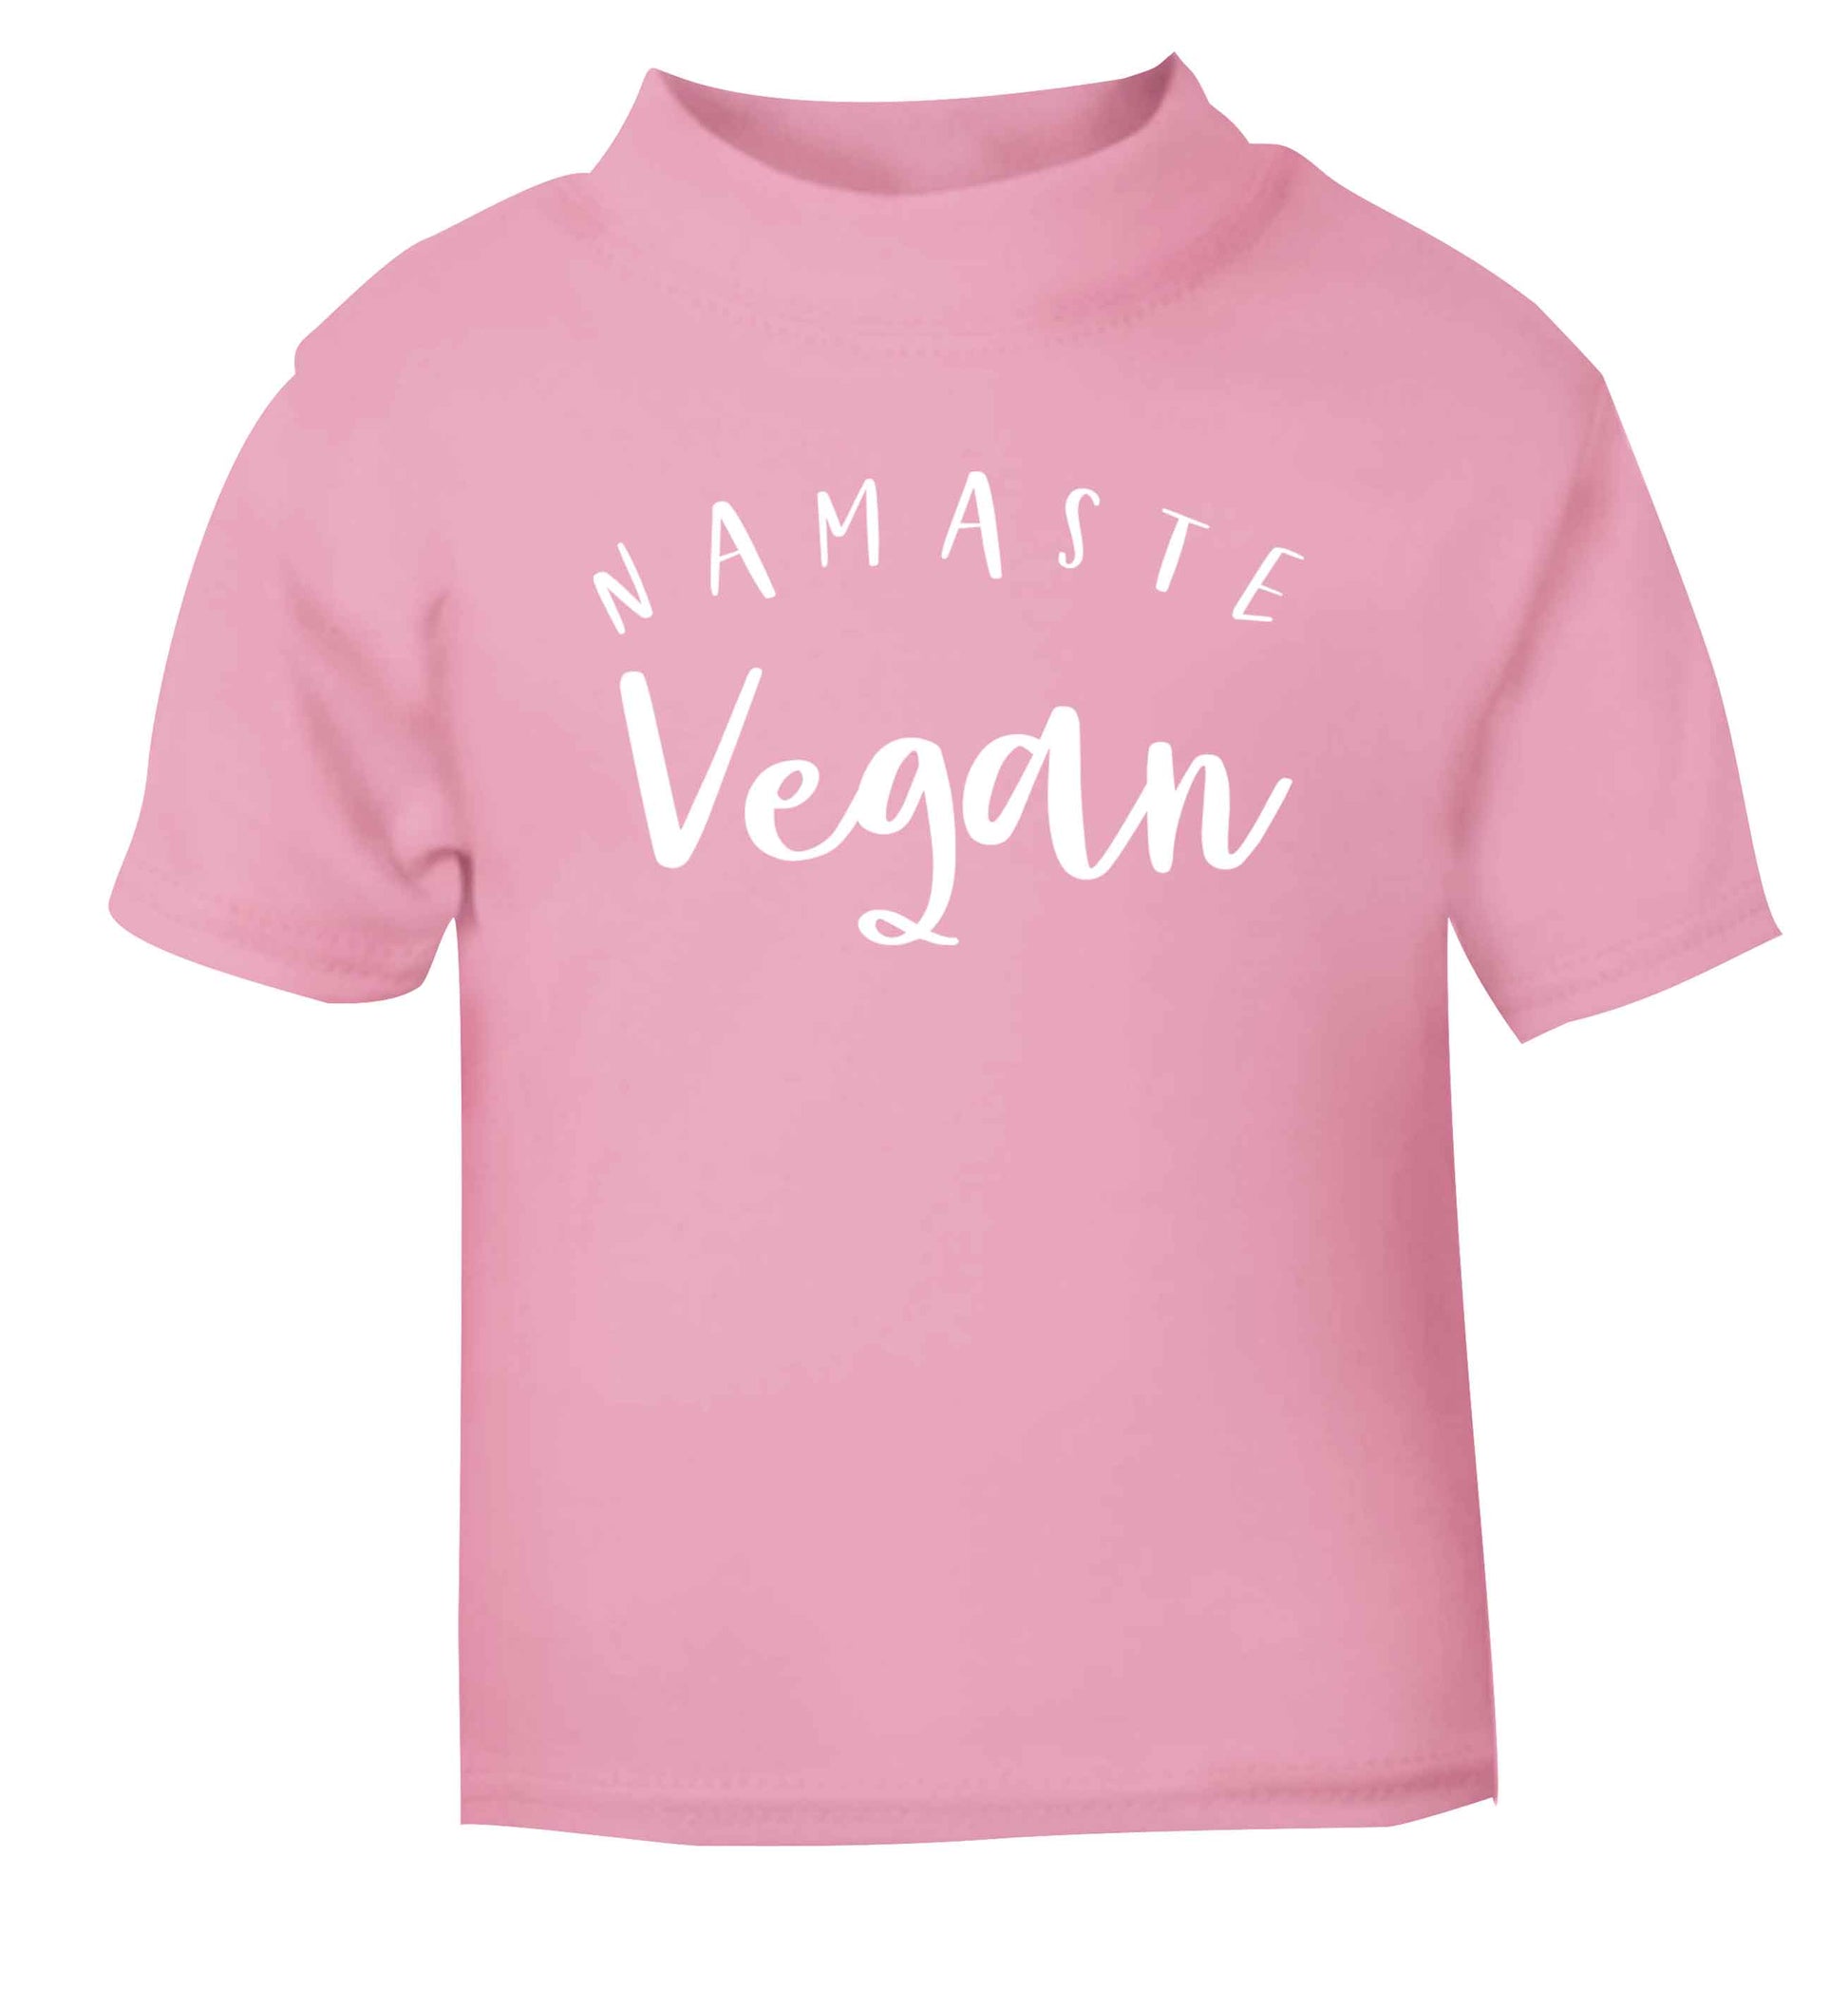 Namaste vegan light pink Baby Toddler Tshirt 2 Years